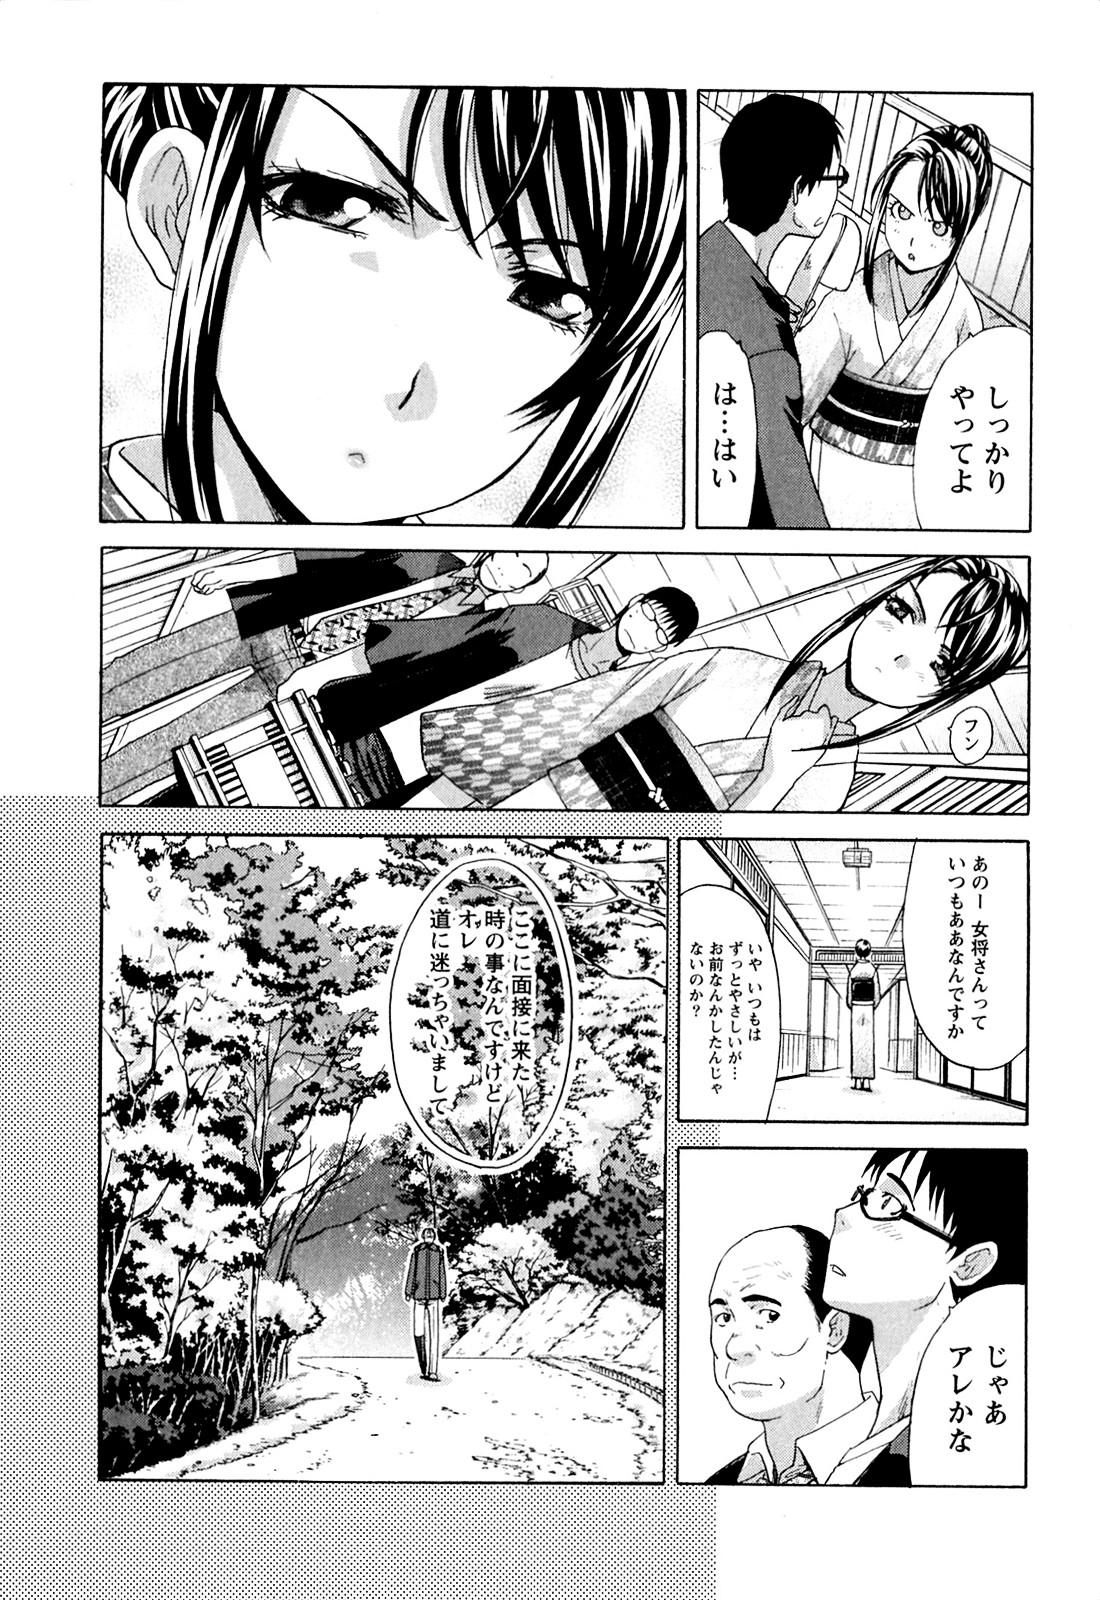 Girls Yu-kkuri Shitene 1 Pure 18 - Page 9